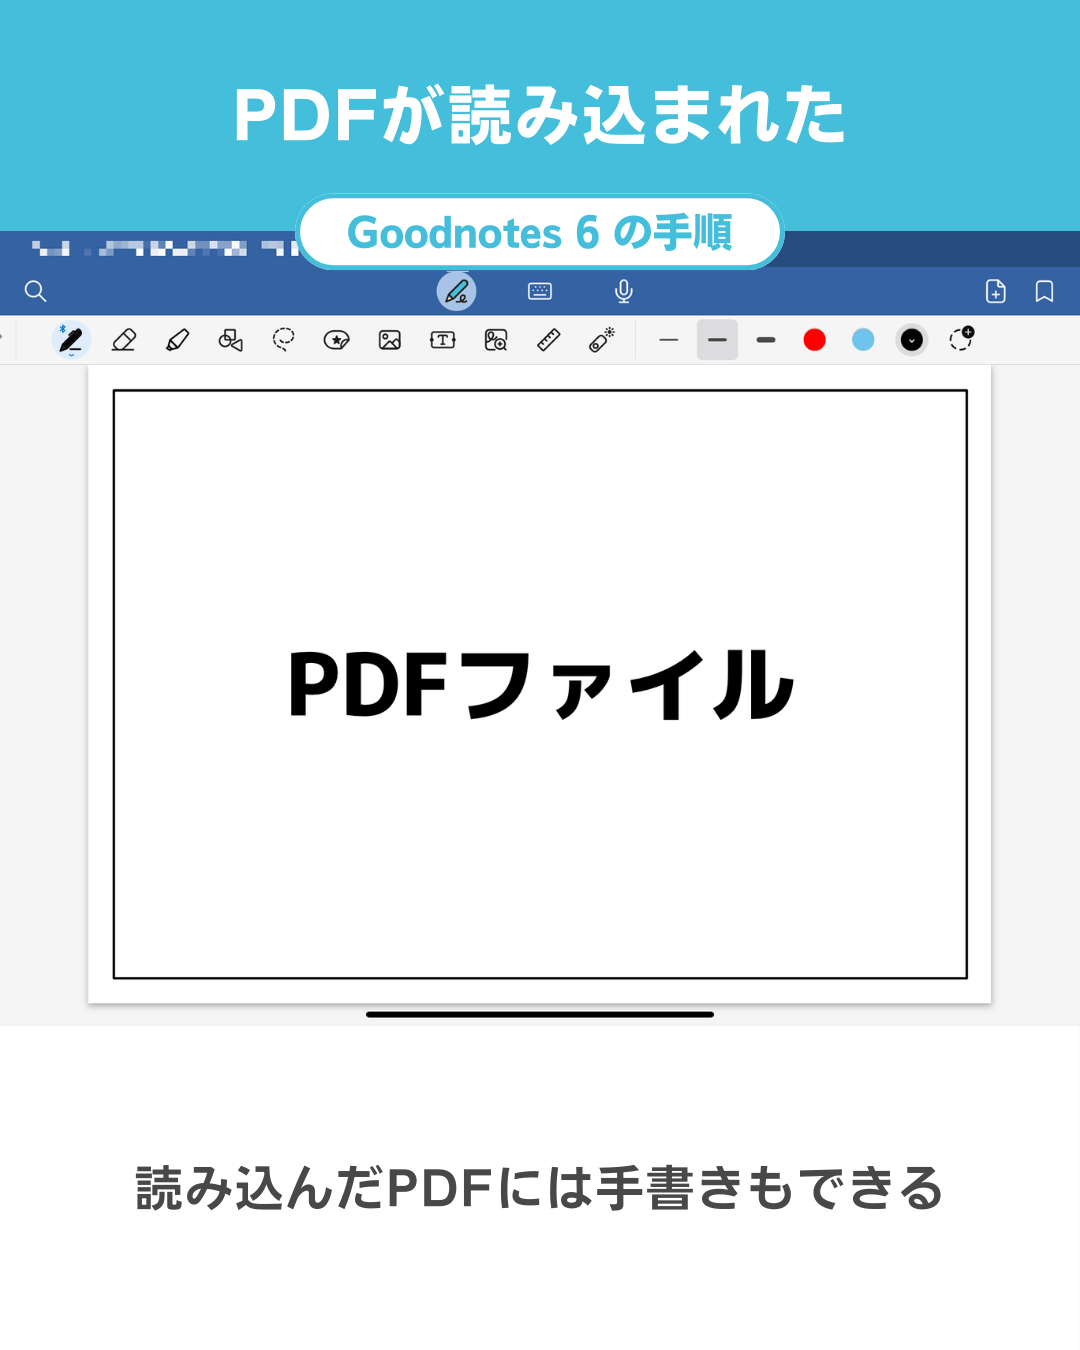 Goodnotes 6にPDFを読み込む・取り込む手順｜PDFを読込完了